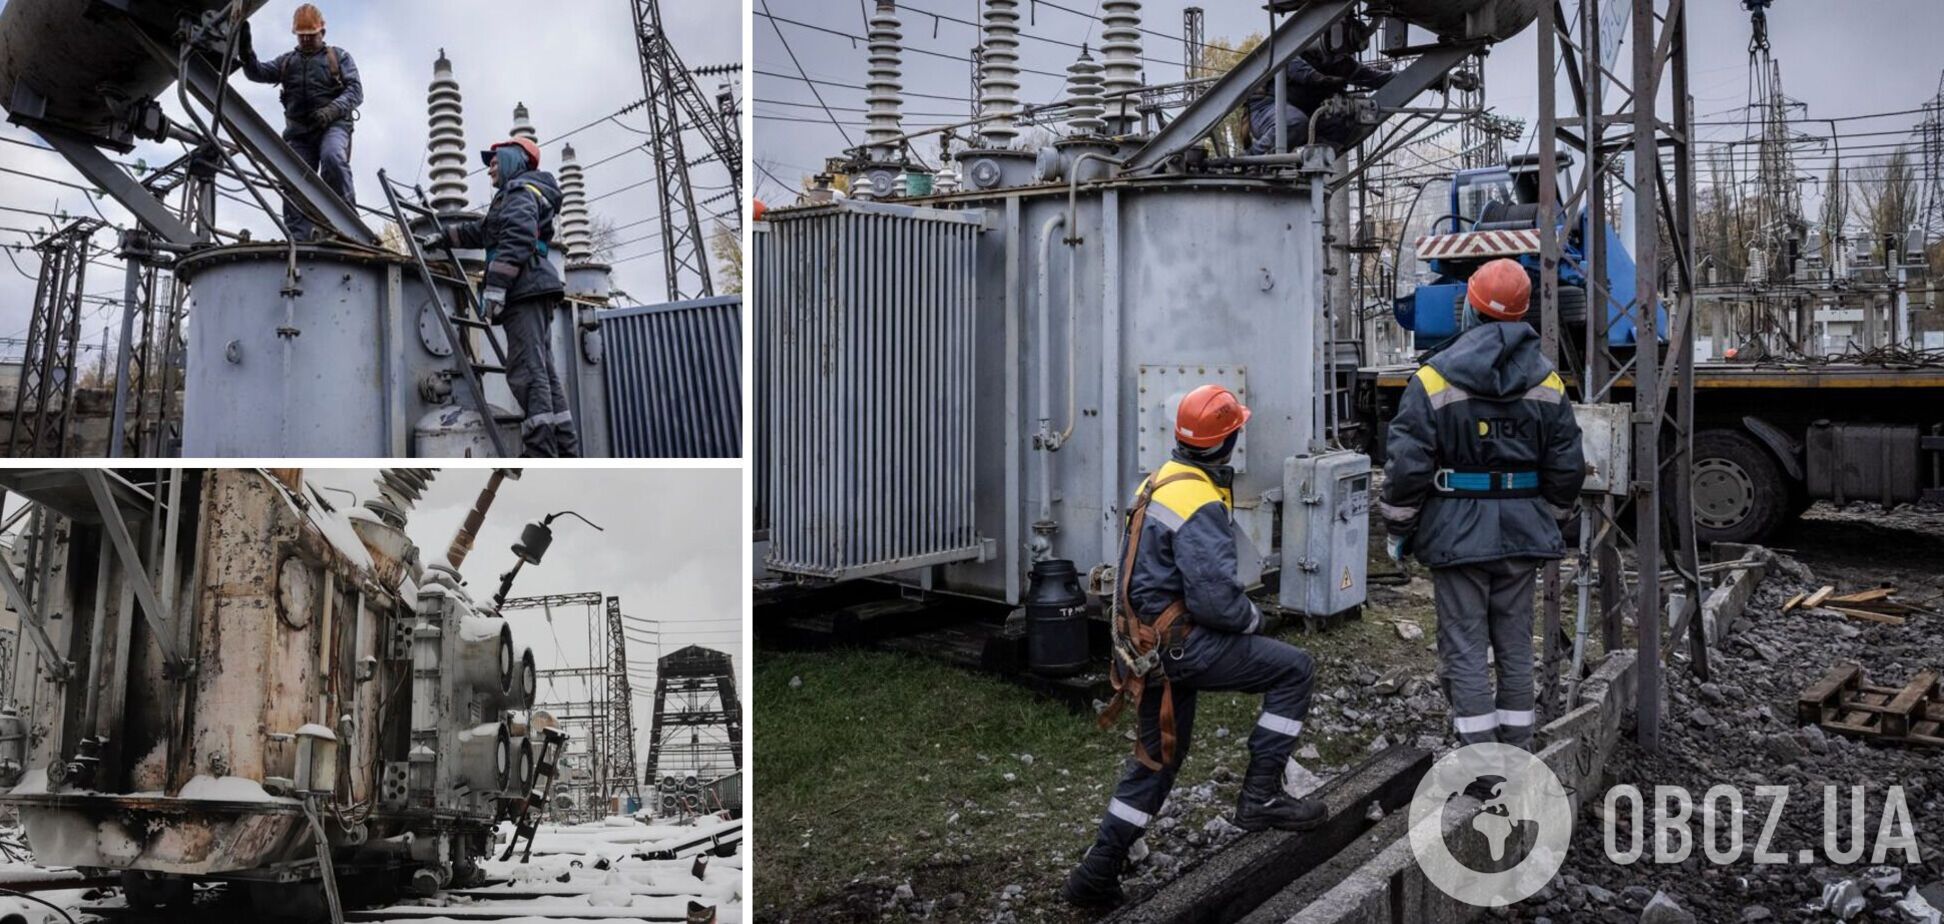 Следующая зима может быть еще сложнее, если Украина не привлечет средства для ремонта энергосистемы, – экс-министр